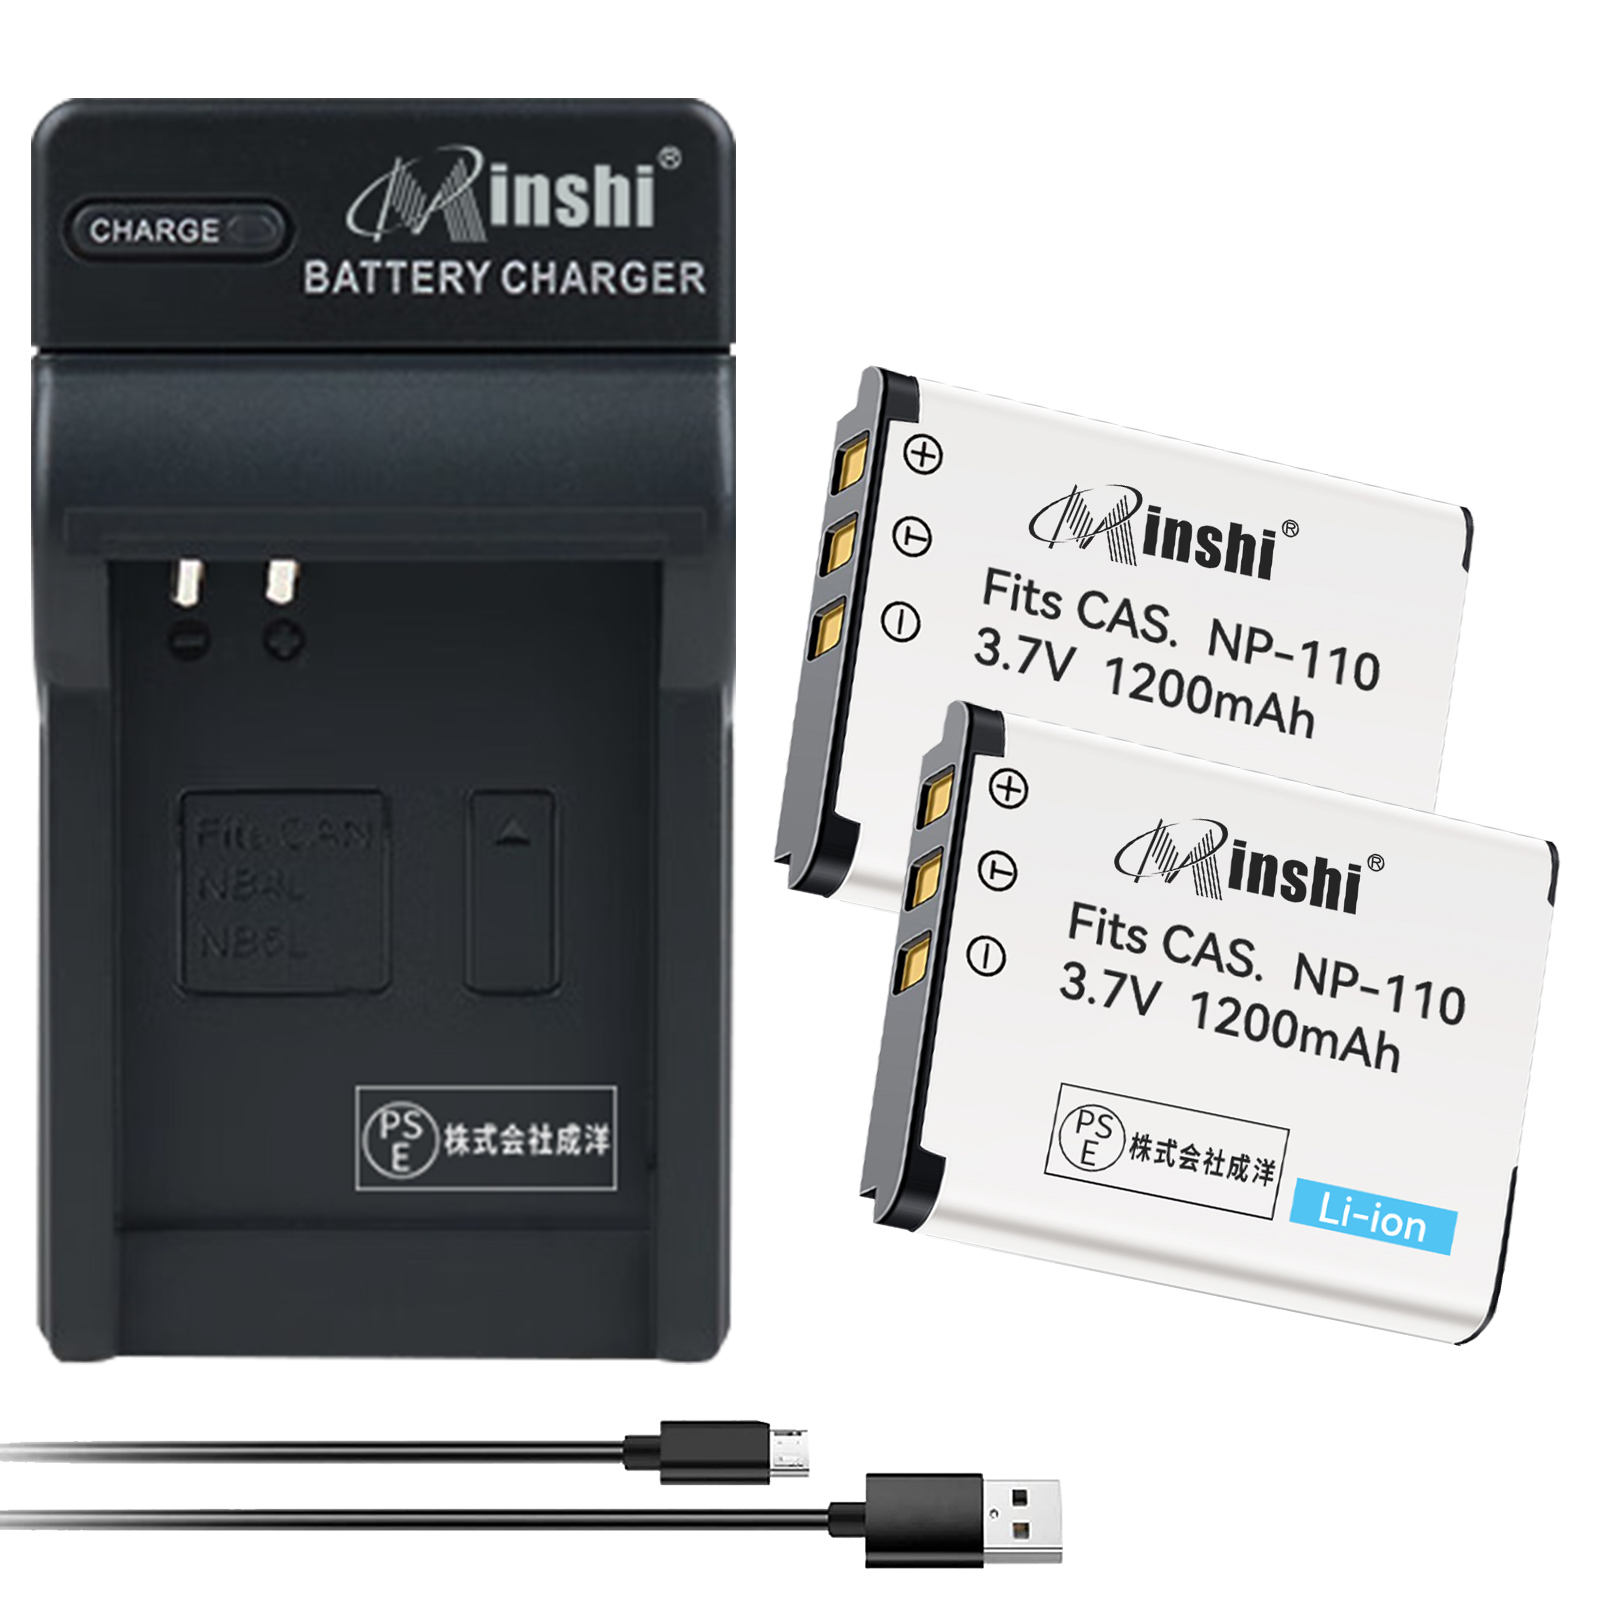 【２個セット】minshi CASIO NP-160【1200mAh 3.7V】【互換急速USBチャージャー】PSE認定済 高品質NP-160 NP-110互換バッテリーPHB